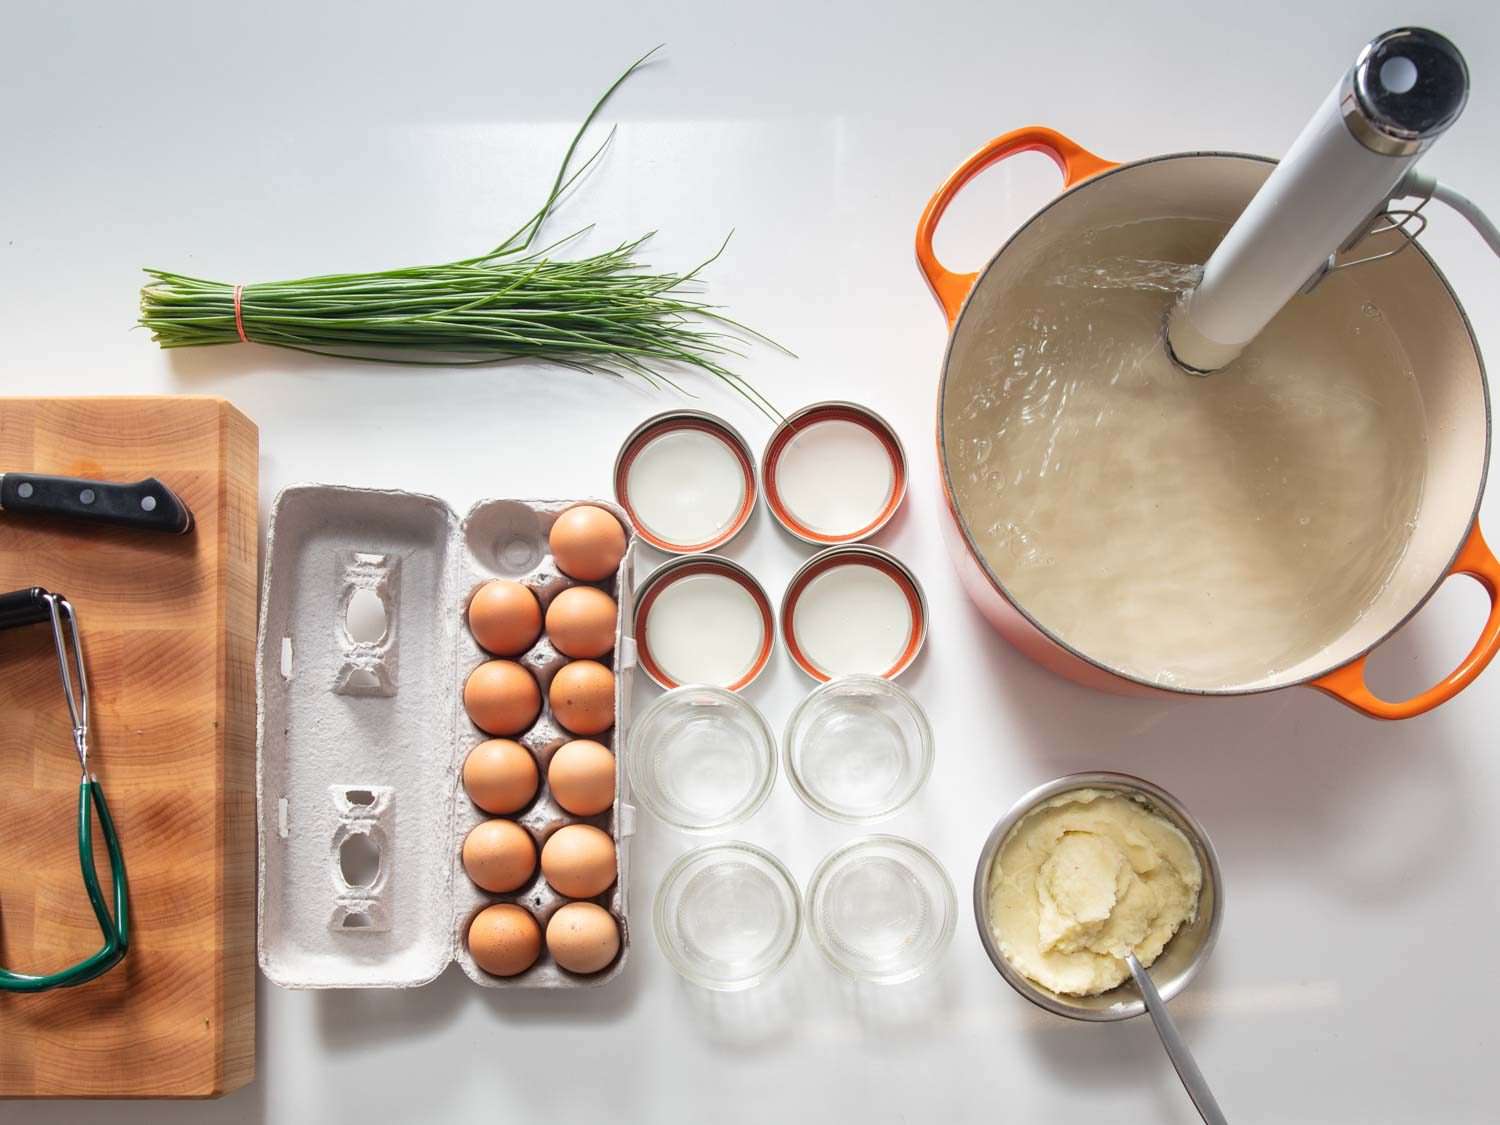 真空烹调土豆泥的鸡蛋罐、浸泡式循环水浴、梅森罐开云体育波胆、土豆泥、一盒鸡蛋和香葱的安装和配料的开销。